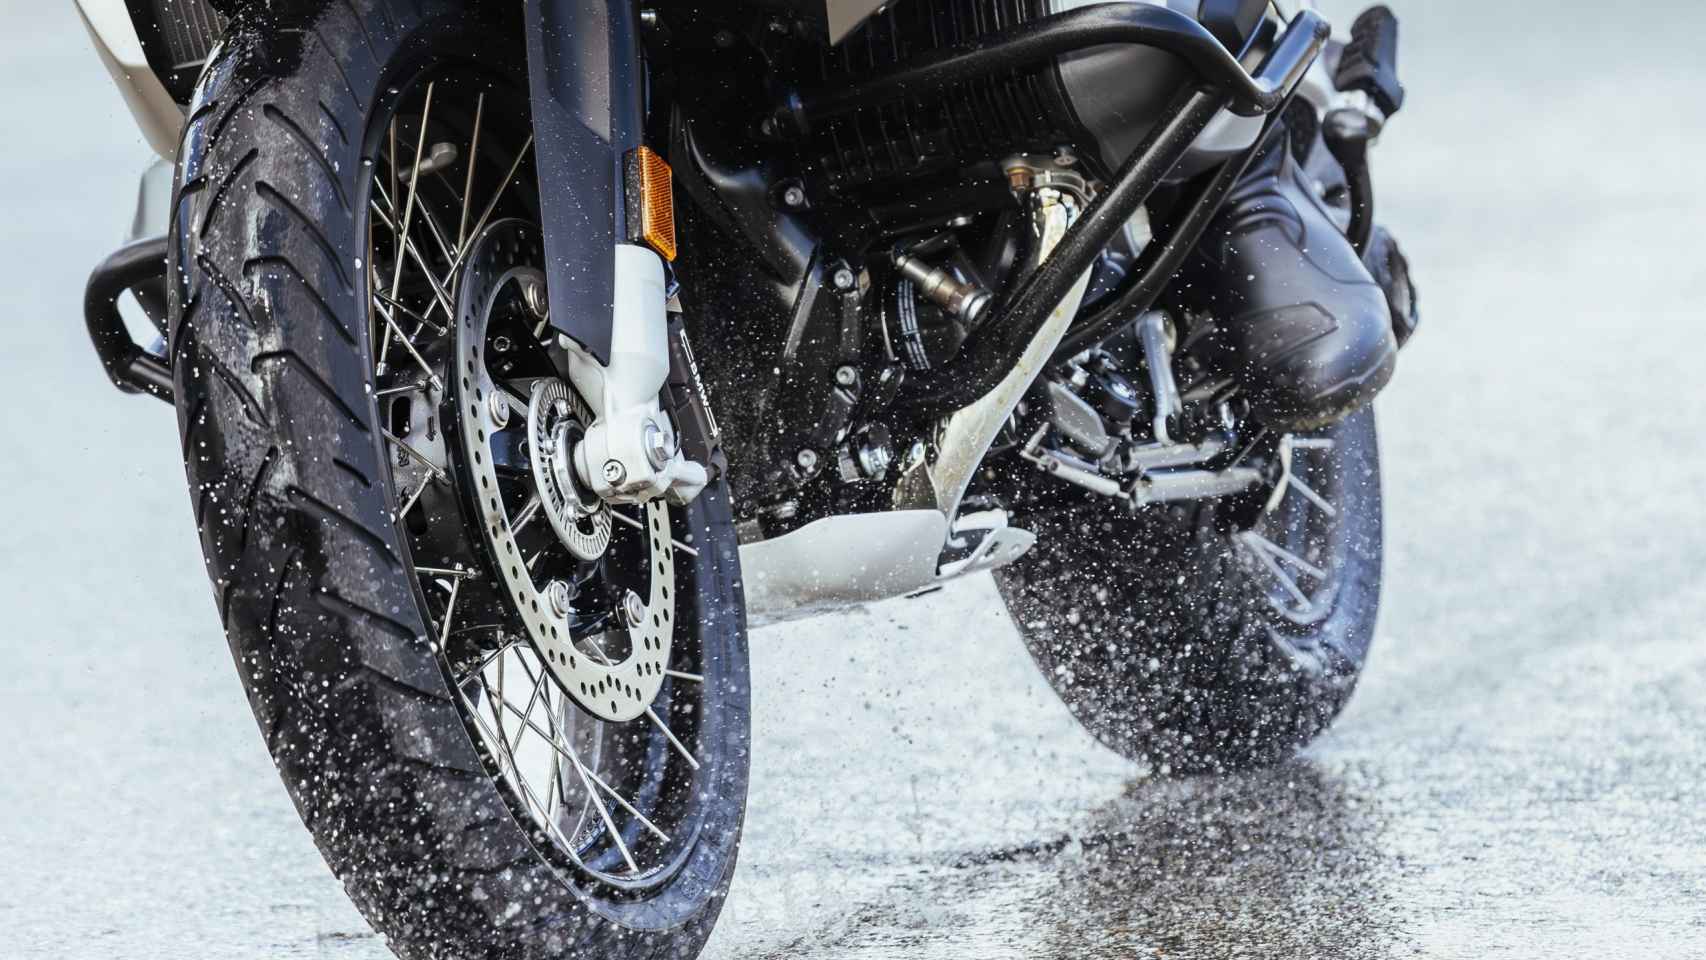 Con la lluvia la estabilidad de la moto cambia notablemente.